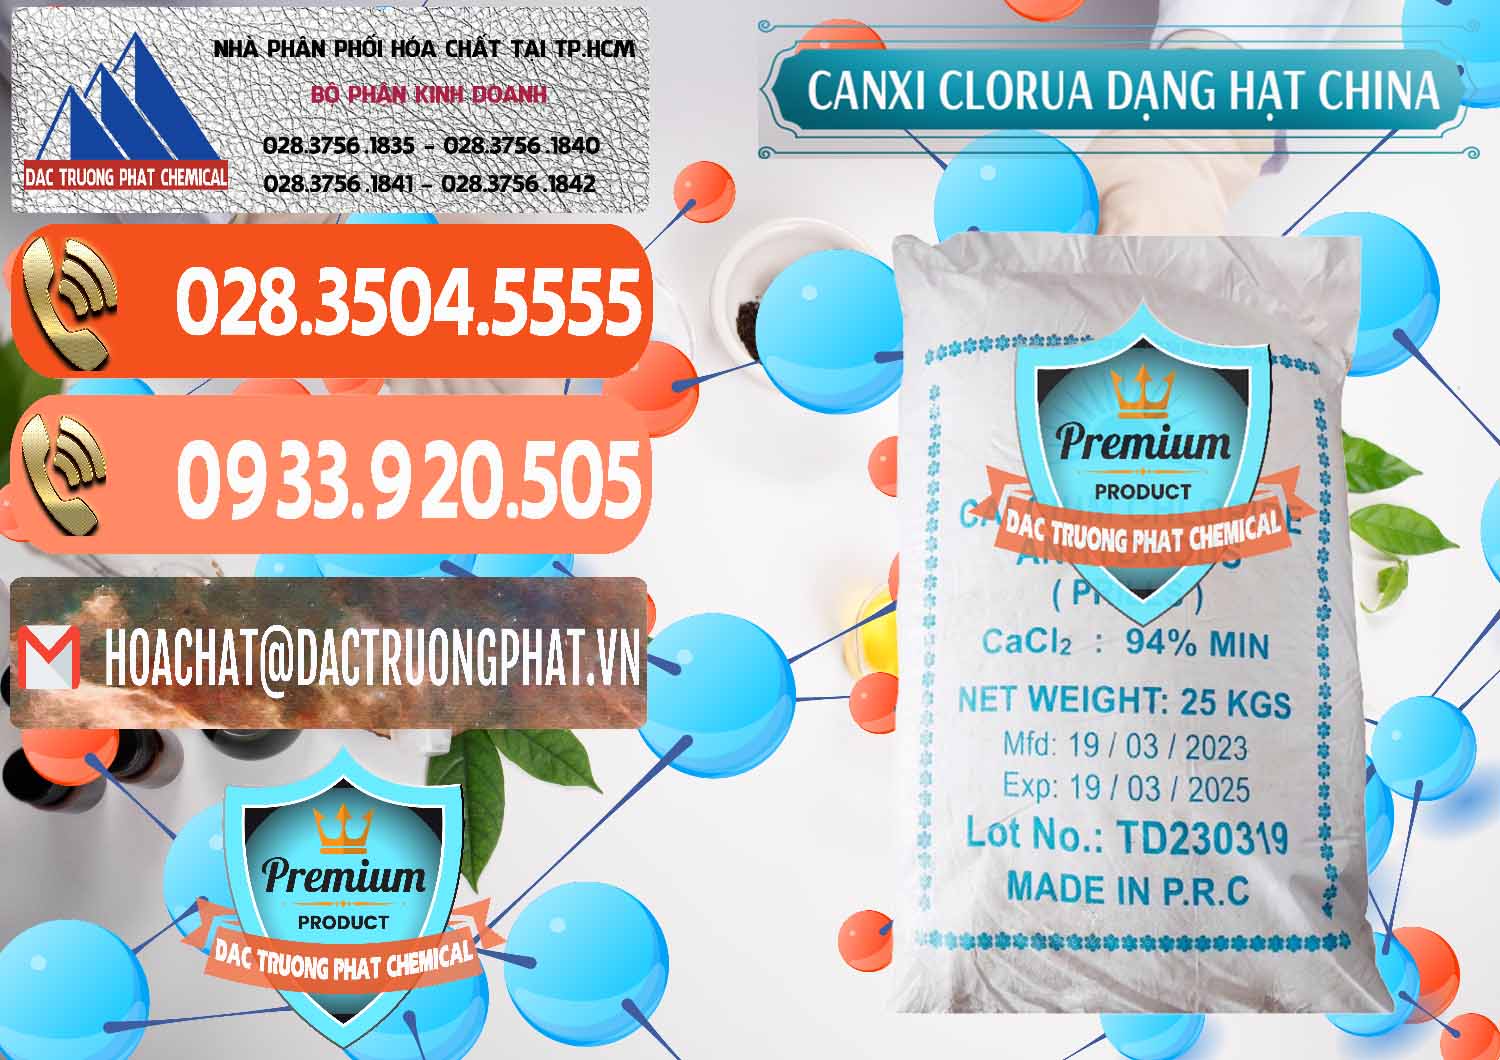 Cty chuyên nhập khẩu và bán CaCl2 – Canxi Clorua 94% Dạng Hạt Trung Quốc China - 0373 - Phân phối ( kinh doanh ) hóa chất tại TP.HCM - hoachatmientay.com